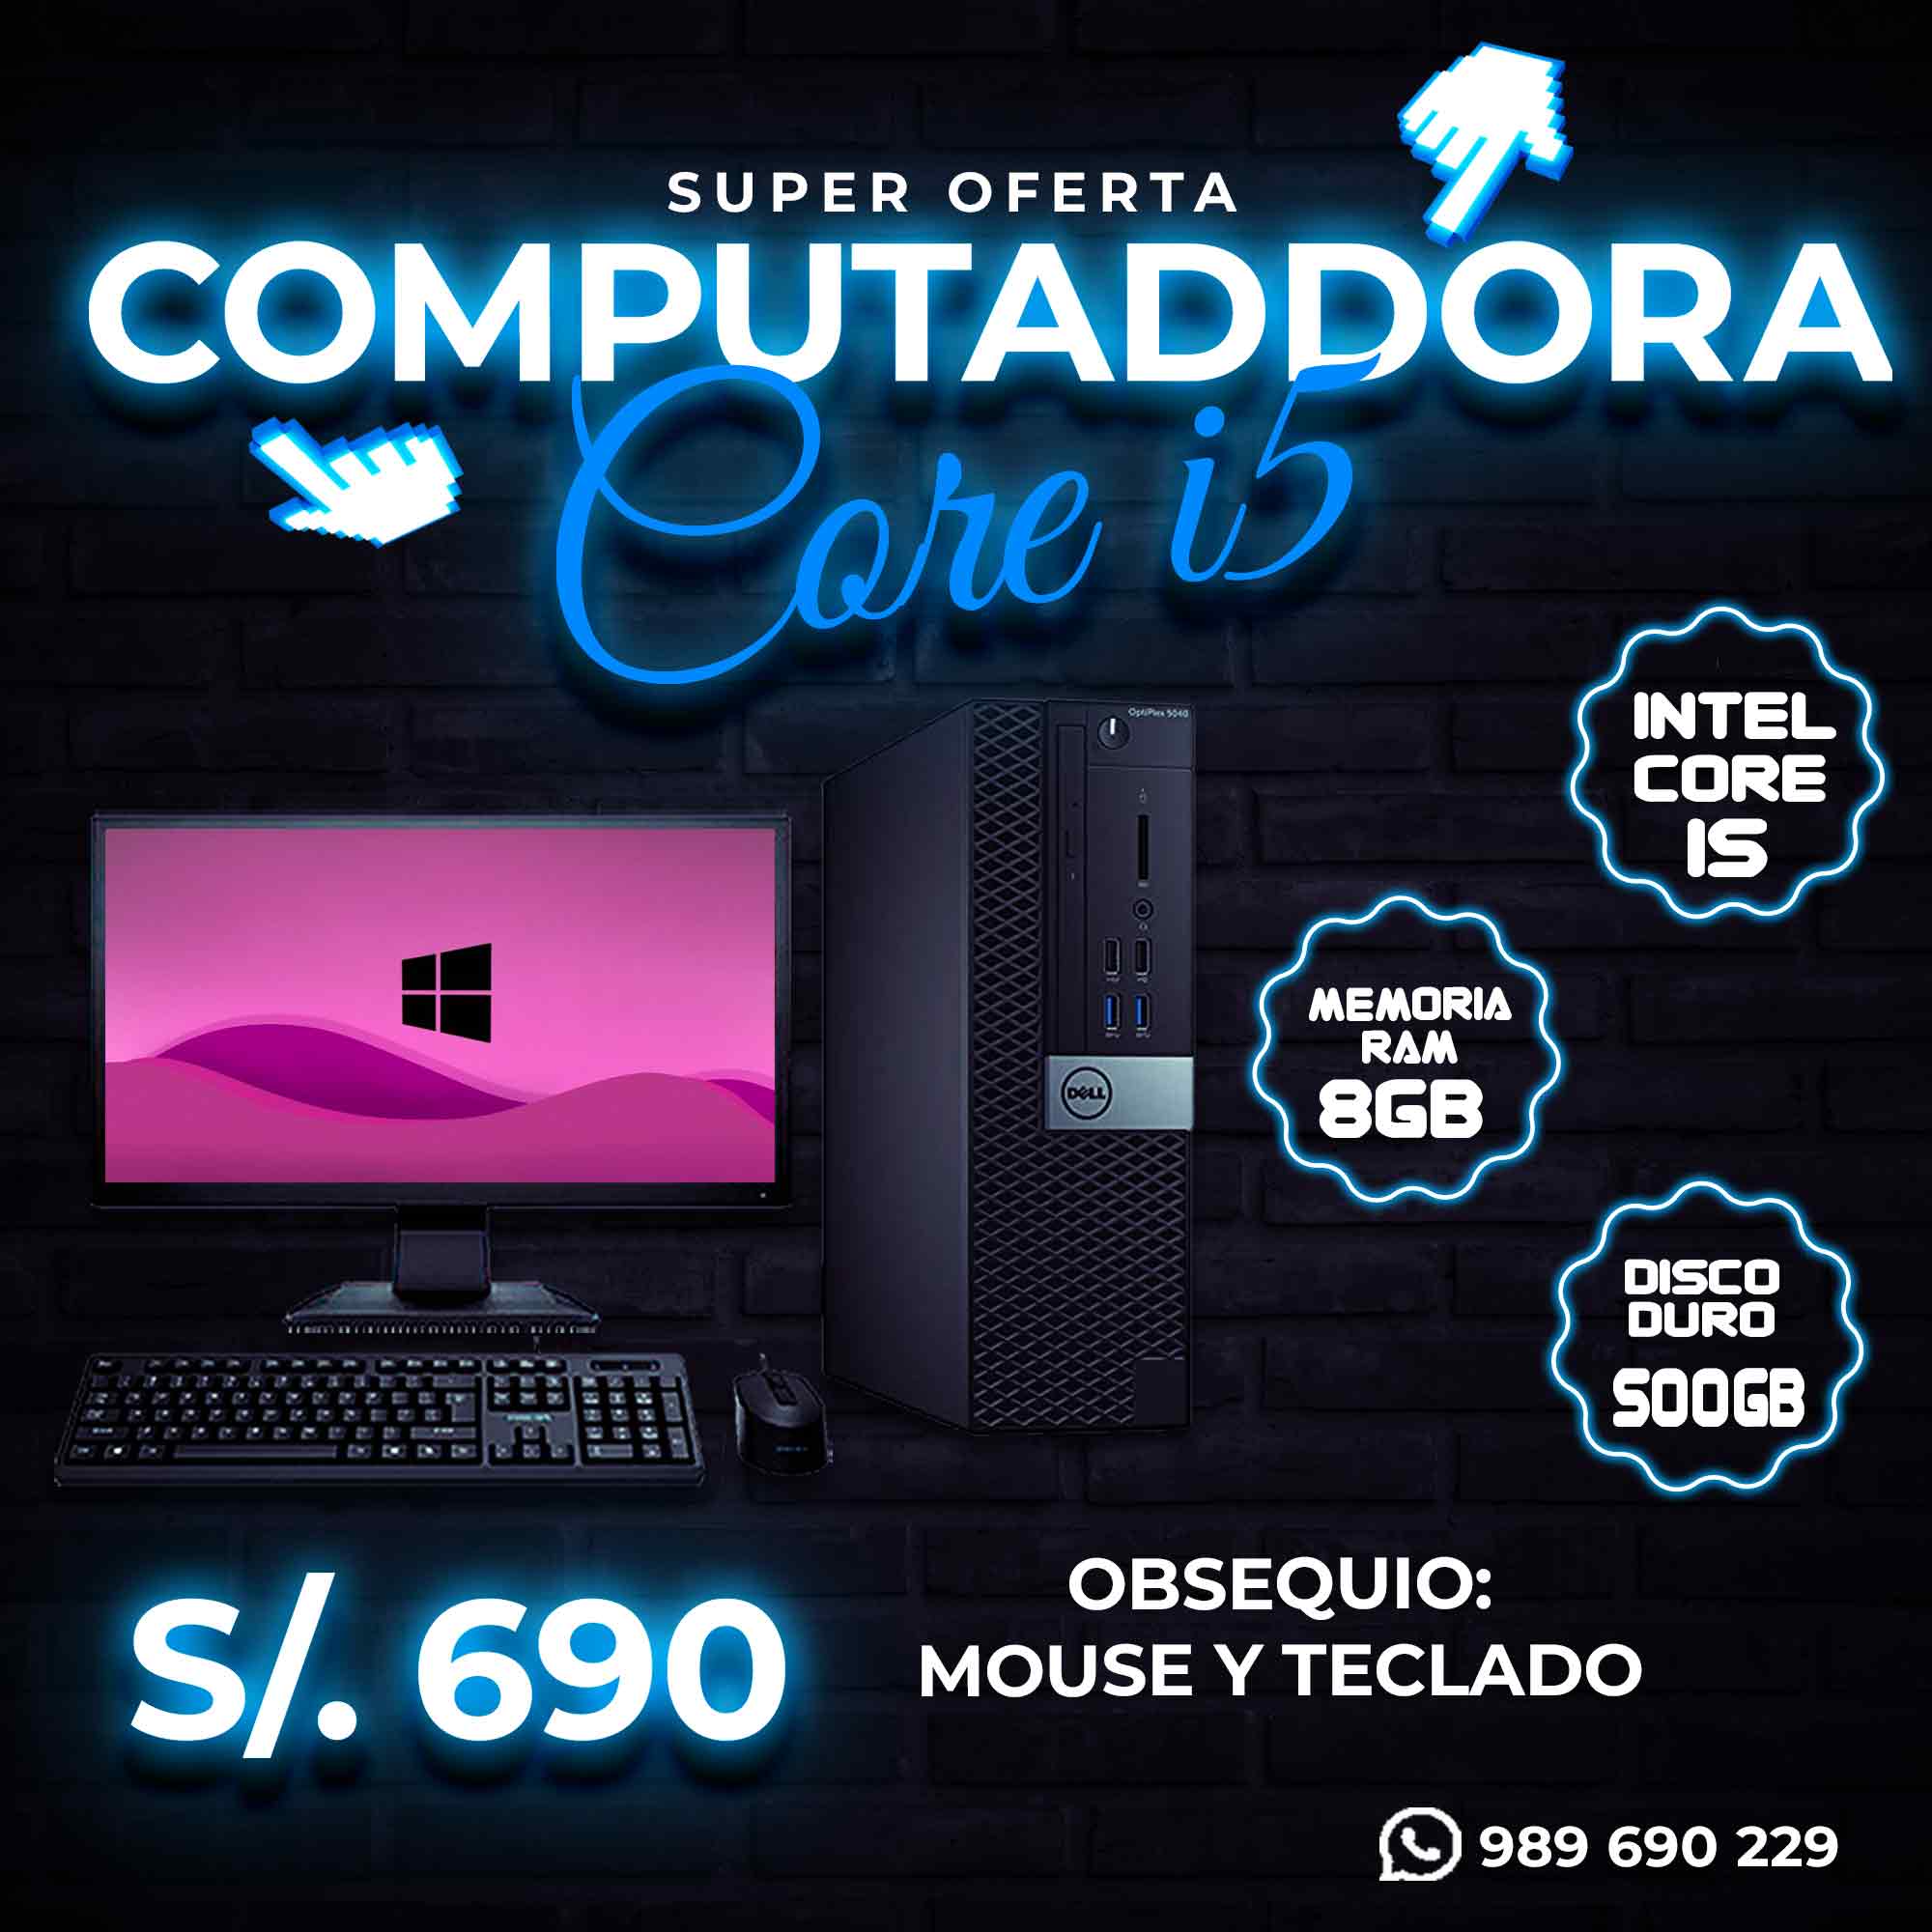 SUPER OFERTA EN COMPUTADORA CORE I5